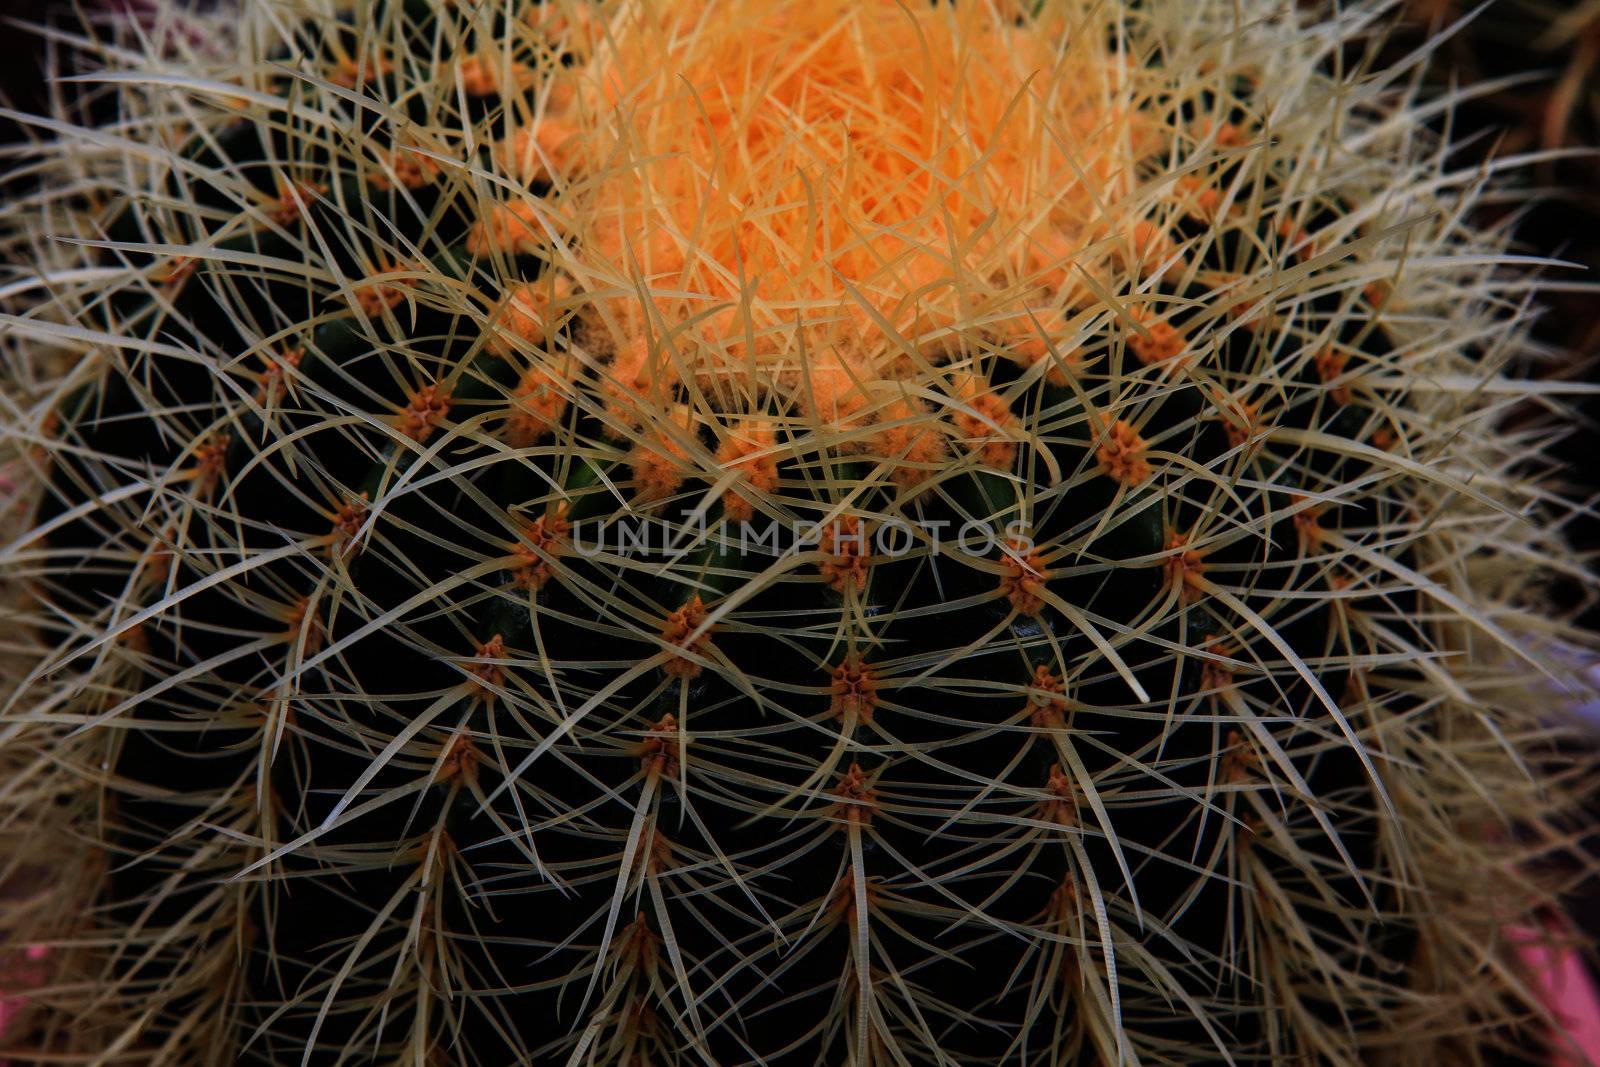 Cactus, extreme closeup at Cameron highlands, Malaysia